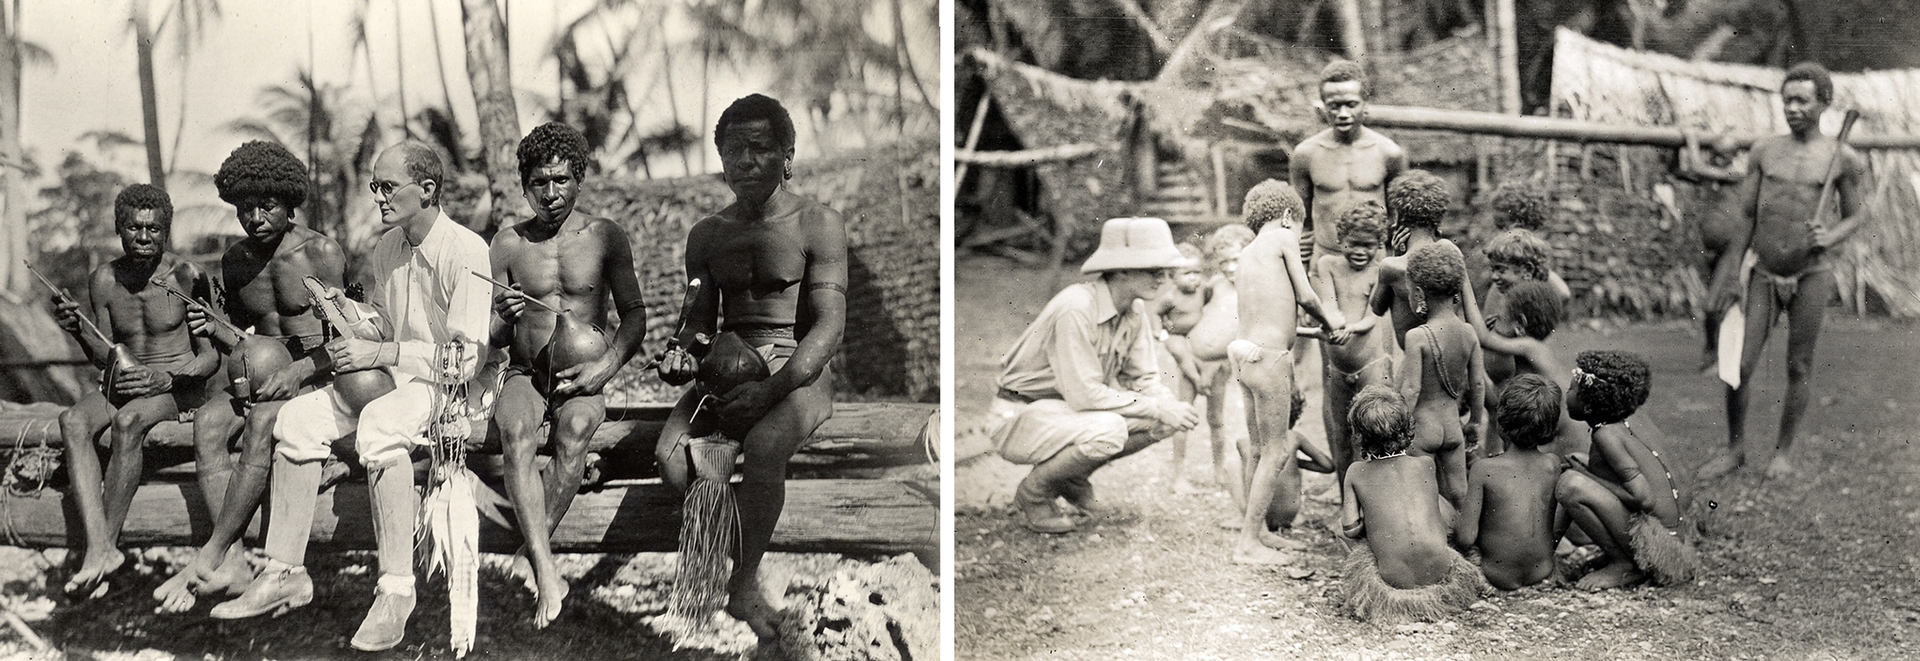 Dwie fotografia prezentują Bronisława Malinowskigo pośród czarnoskórych mieszkańców wysp Polinezji. Fotografia po lewej, przedstawia skąpo ubranych czarnoskóry mężczyzn siedzących na pniu drzewa, a pomiędzy nimi ubrany na biało Bronisław Malinowski. Wszyscy trzymają okrągłe naczynia w rękach. Fotografia po prawej stronie, to obozowisko czarnoskórych, na pierwszym planie widoczna grupa skąpo ubranych czarnoskórych dzieci, które są zajęte zabawą. Po lewej stronie kuca przy nich Bronisław Malinowski. Za chłopcami stoją dwaj dorośli czarnoskórzy mężczyźni.